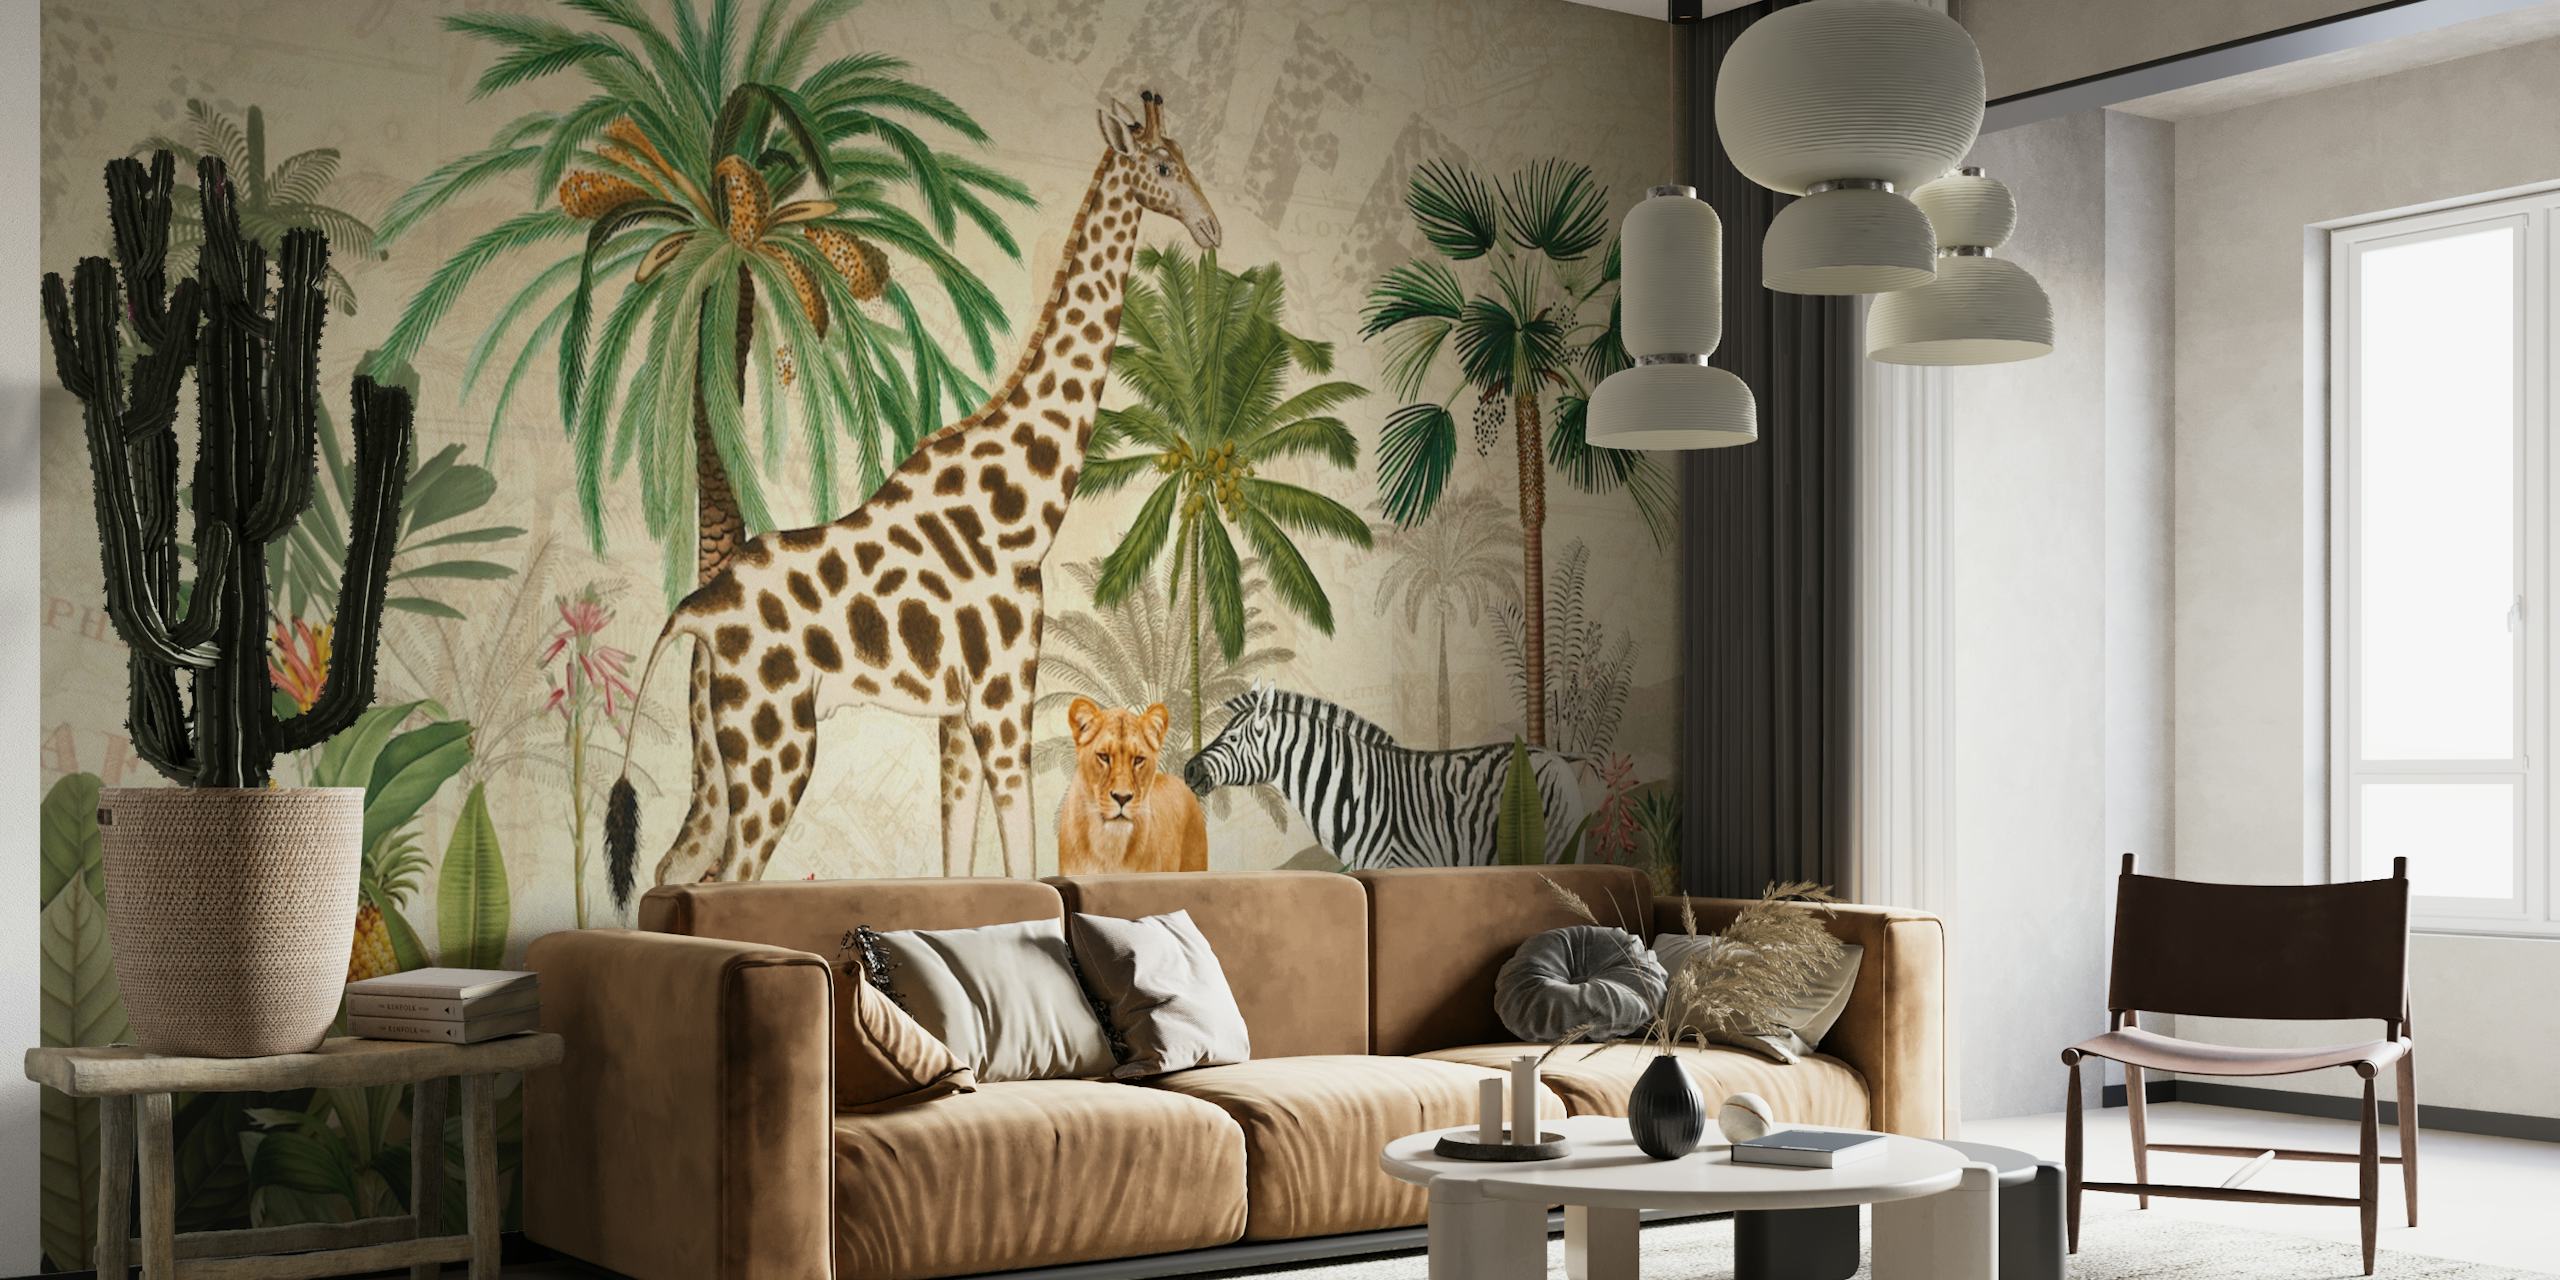 Fototapeta v jungle safari ve vintage stylu s žirafami, leopardy a zebrami ve svěžím prostředí